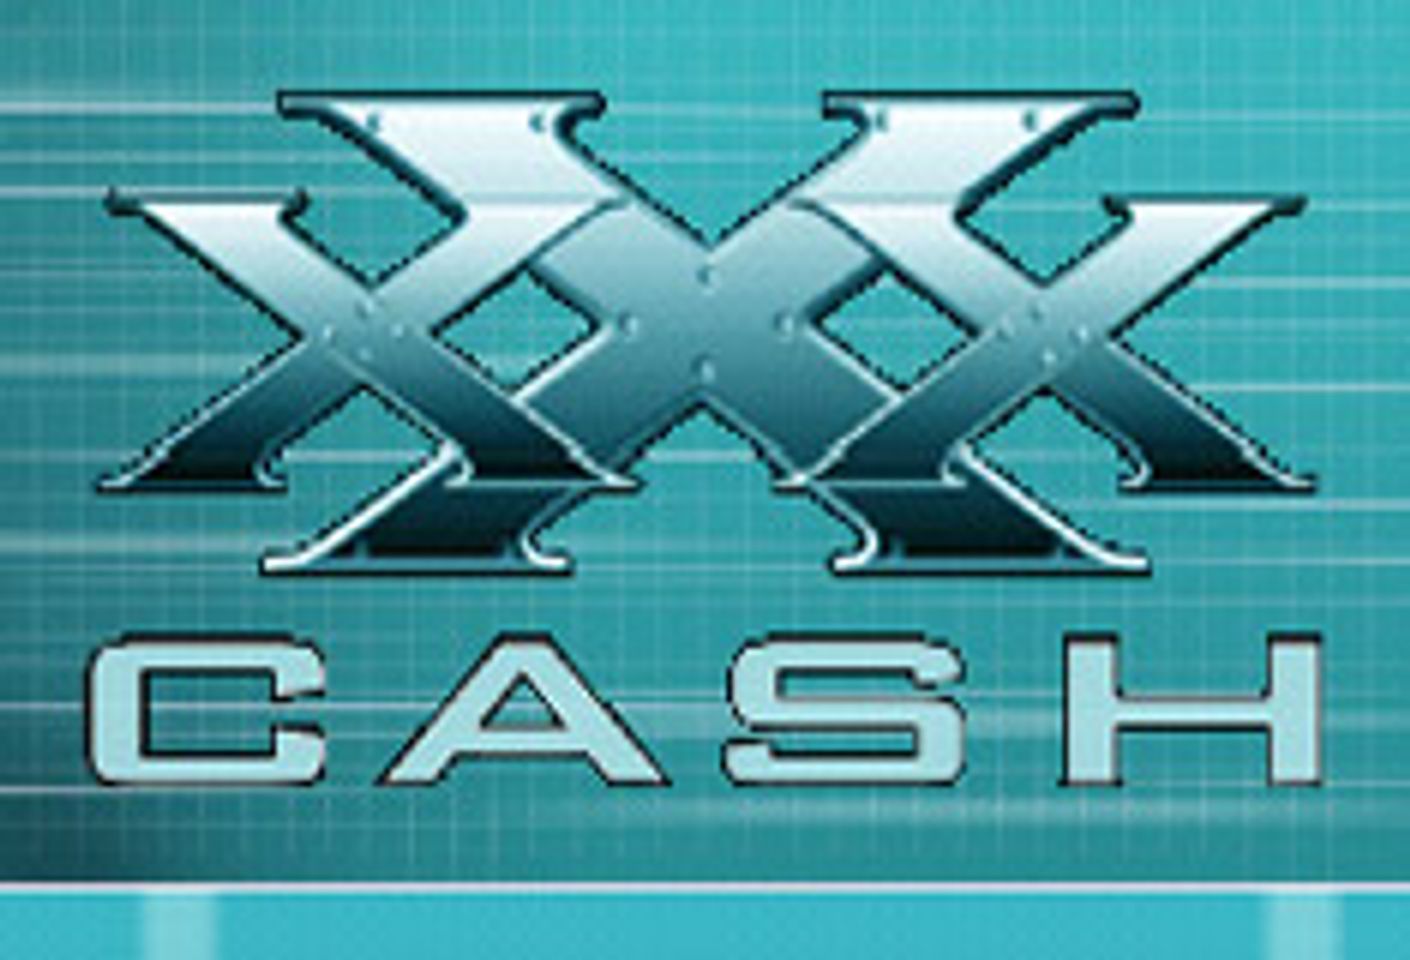 XXXCash.com Launches Redesigned Sites